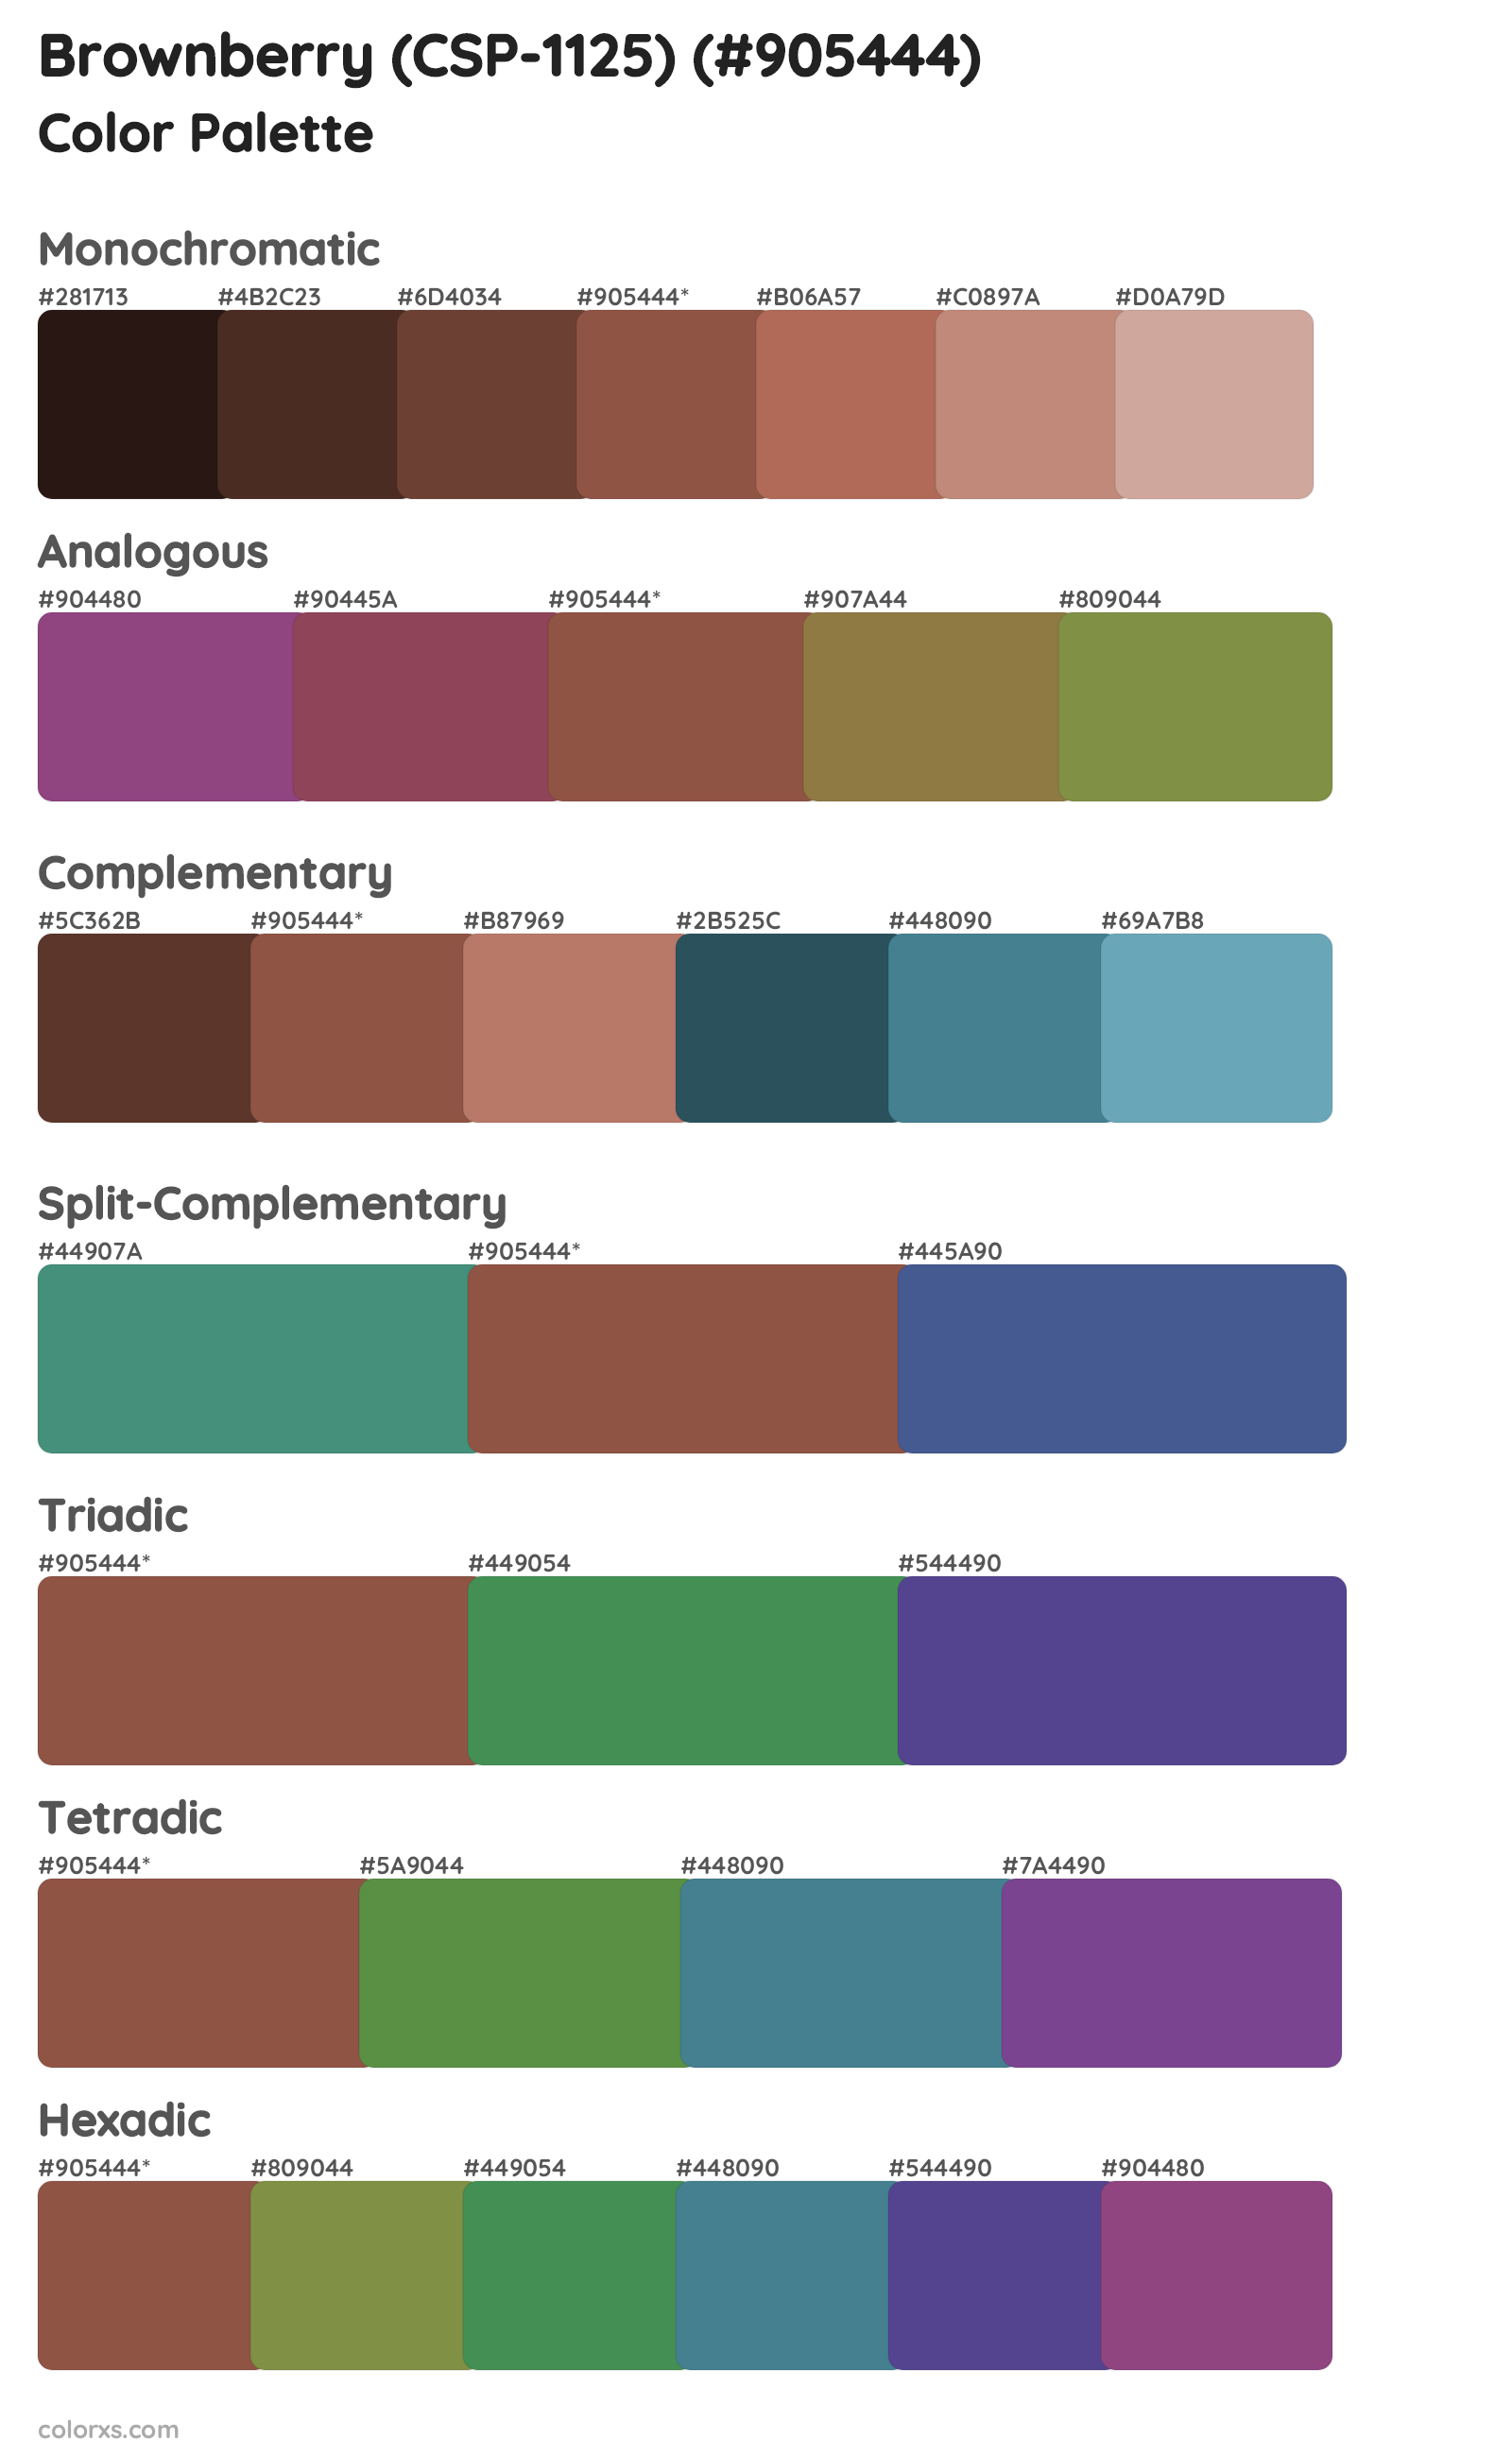 Brownberry (CSP-1125) Color Scheme Palettes